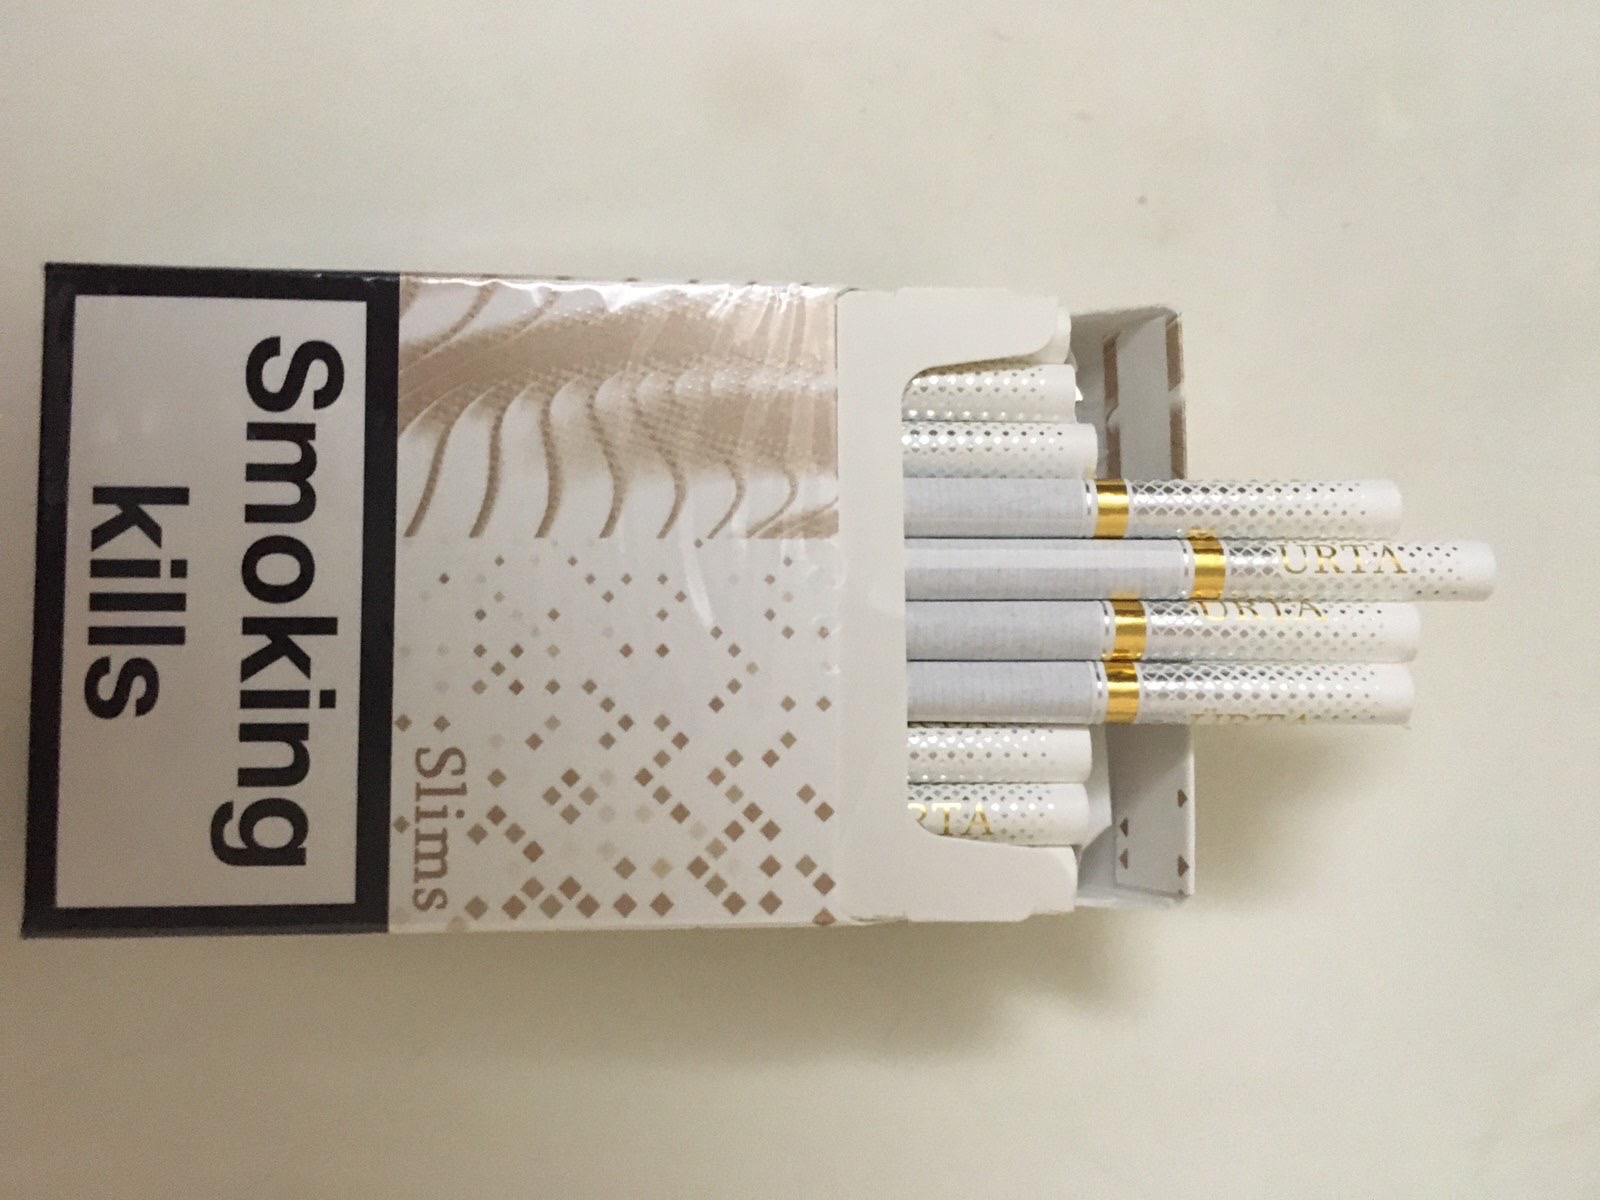 Продам поблочно от-5 блоков сигареты и табачные стики HEETS и FEET - фотография